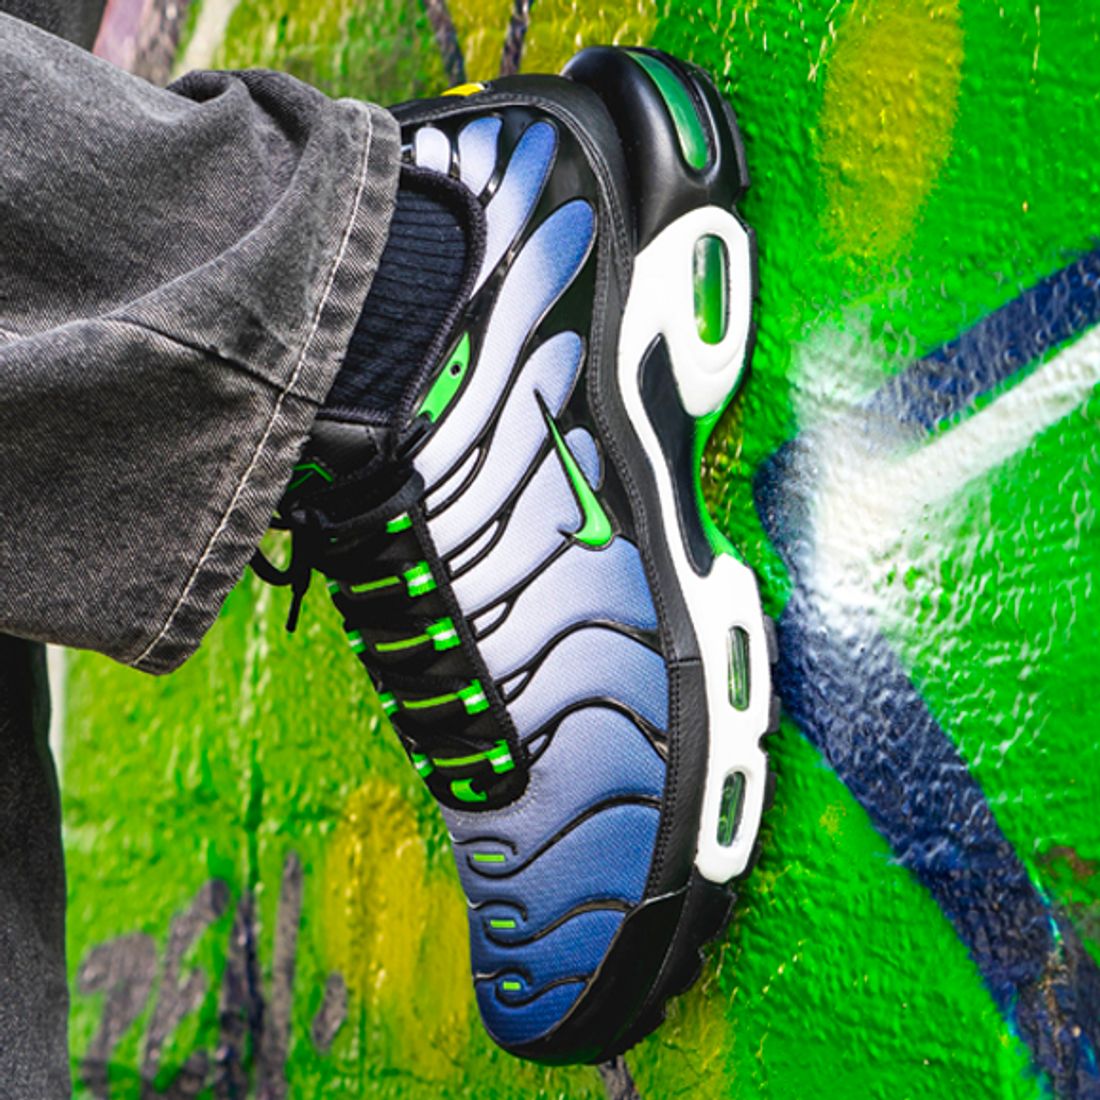 Why Sneakerheads Keep Nike Air Max in Their Foot Locker - Sneaker Freaker